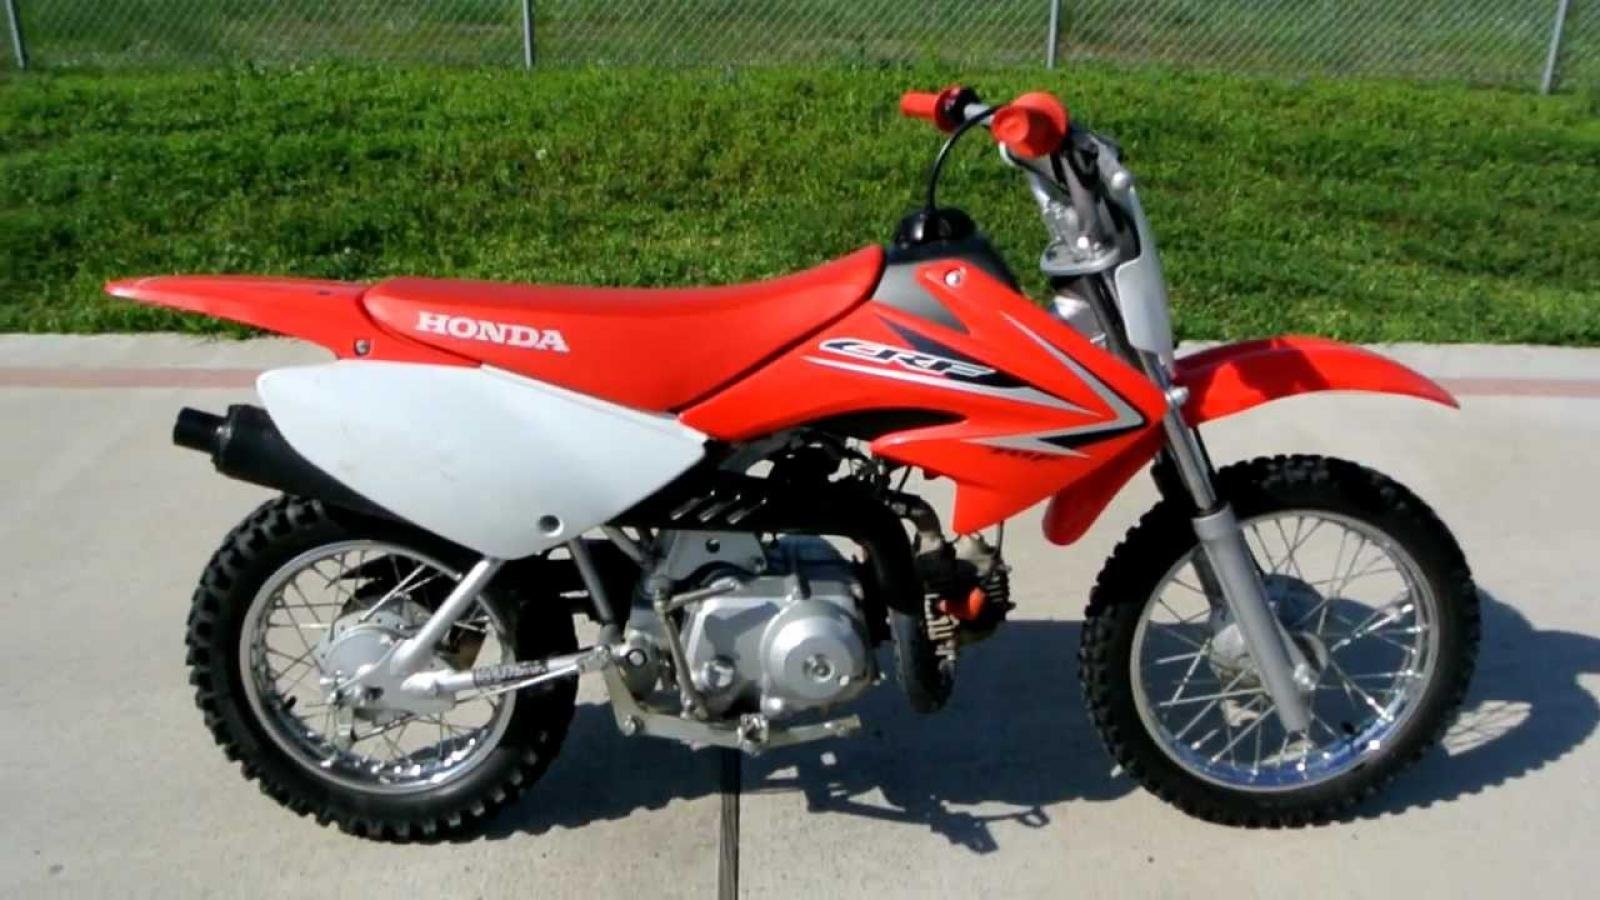 Honda 70. Honda CRF 70. Honda CRF 50-70. Honda CRF 70f 2007. XT 70 Honda.